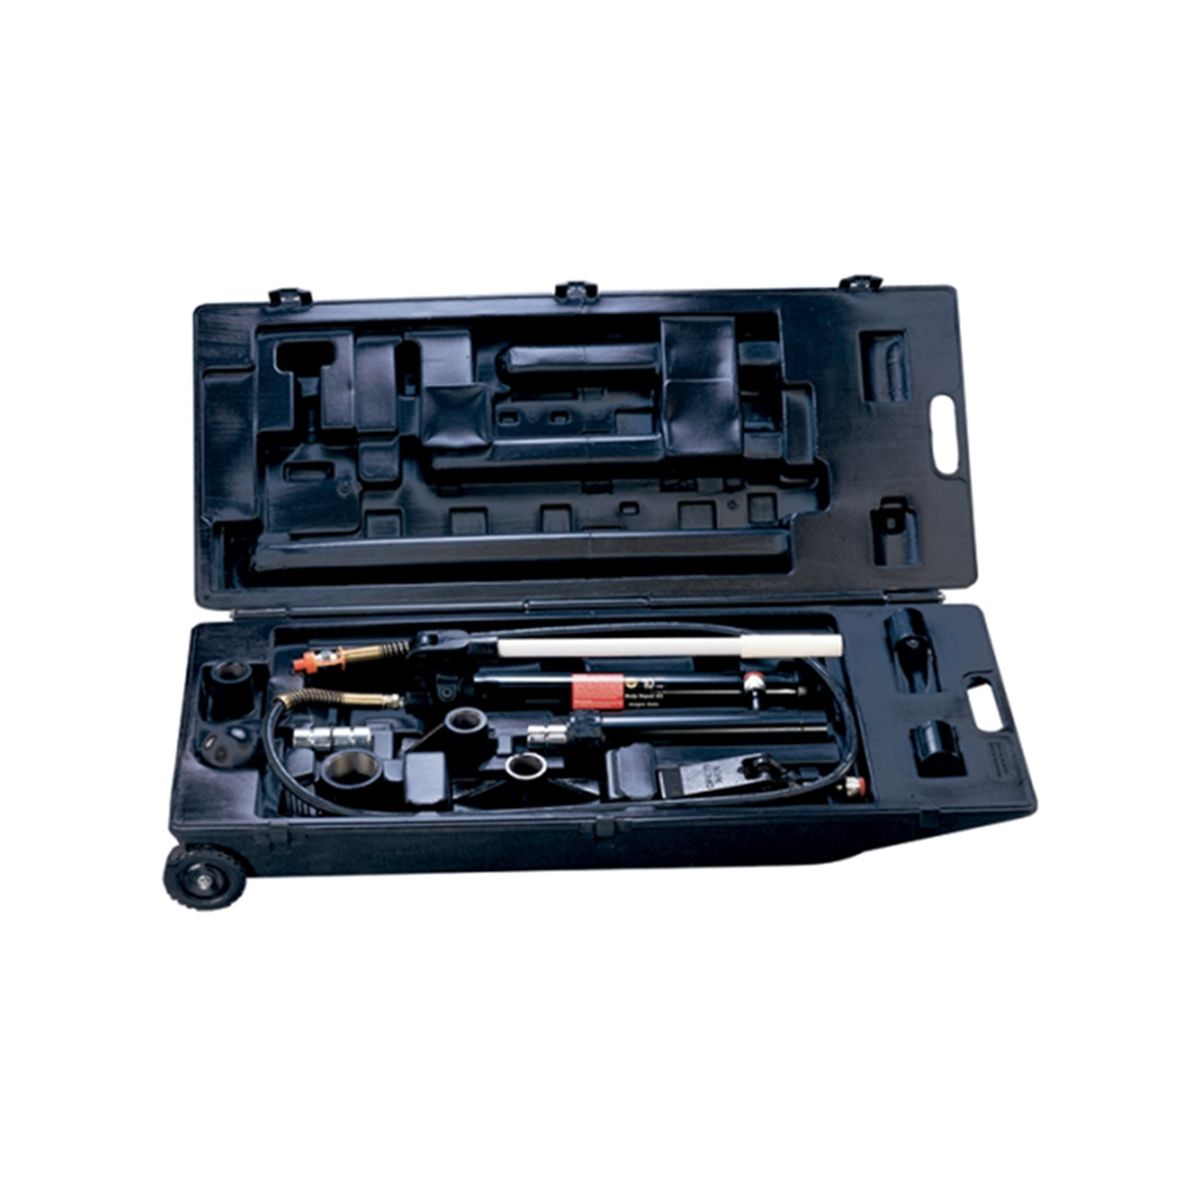 Hydraulic/Air Body Repair Kit - 10 Ton w/ Case